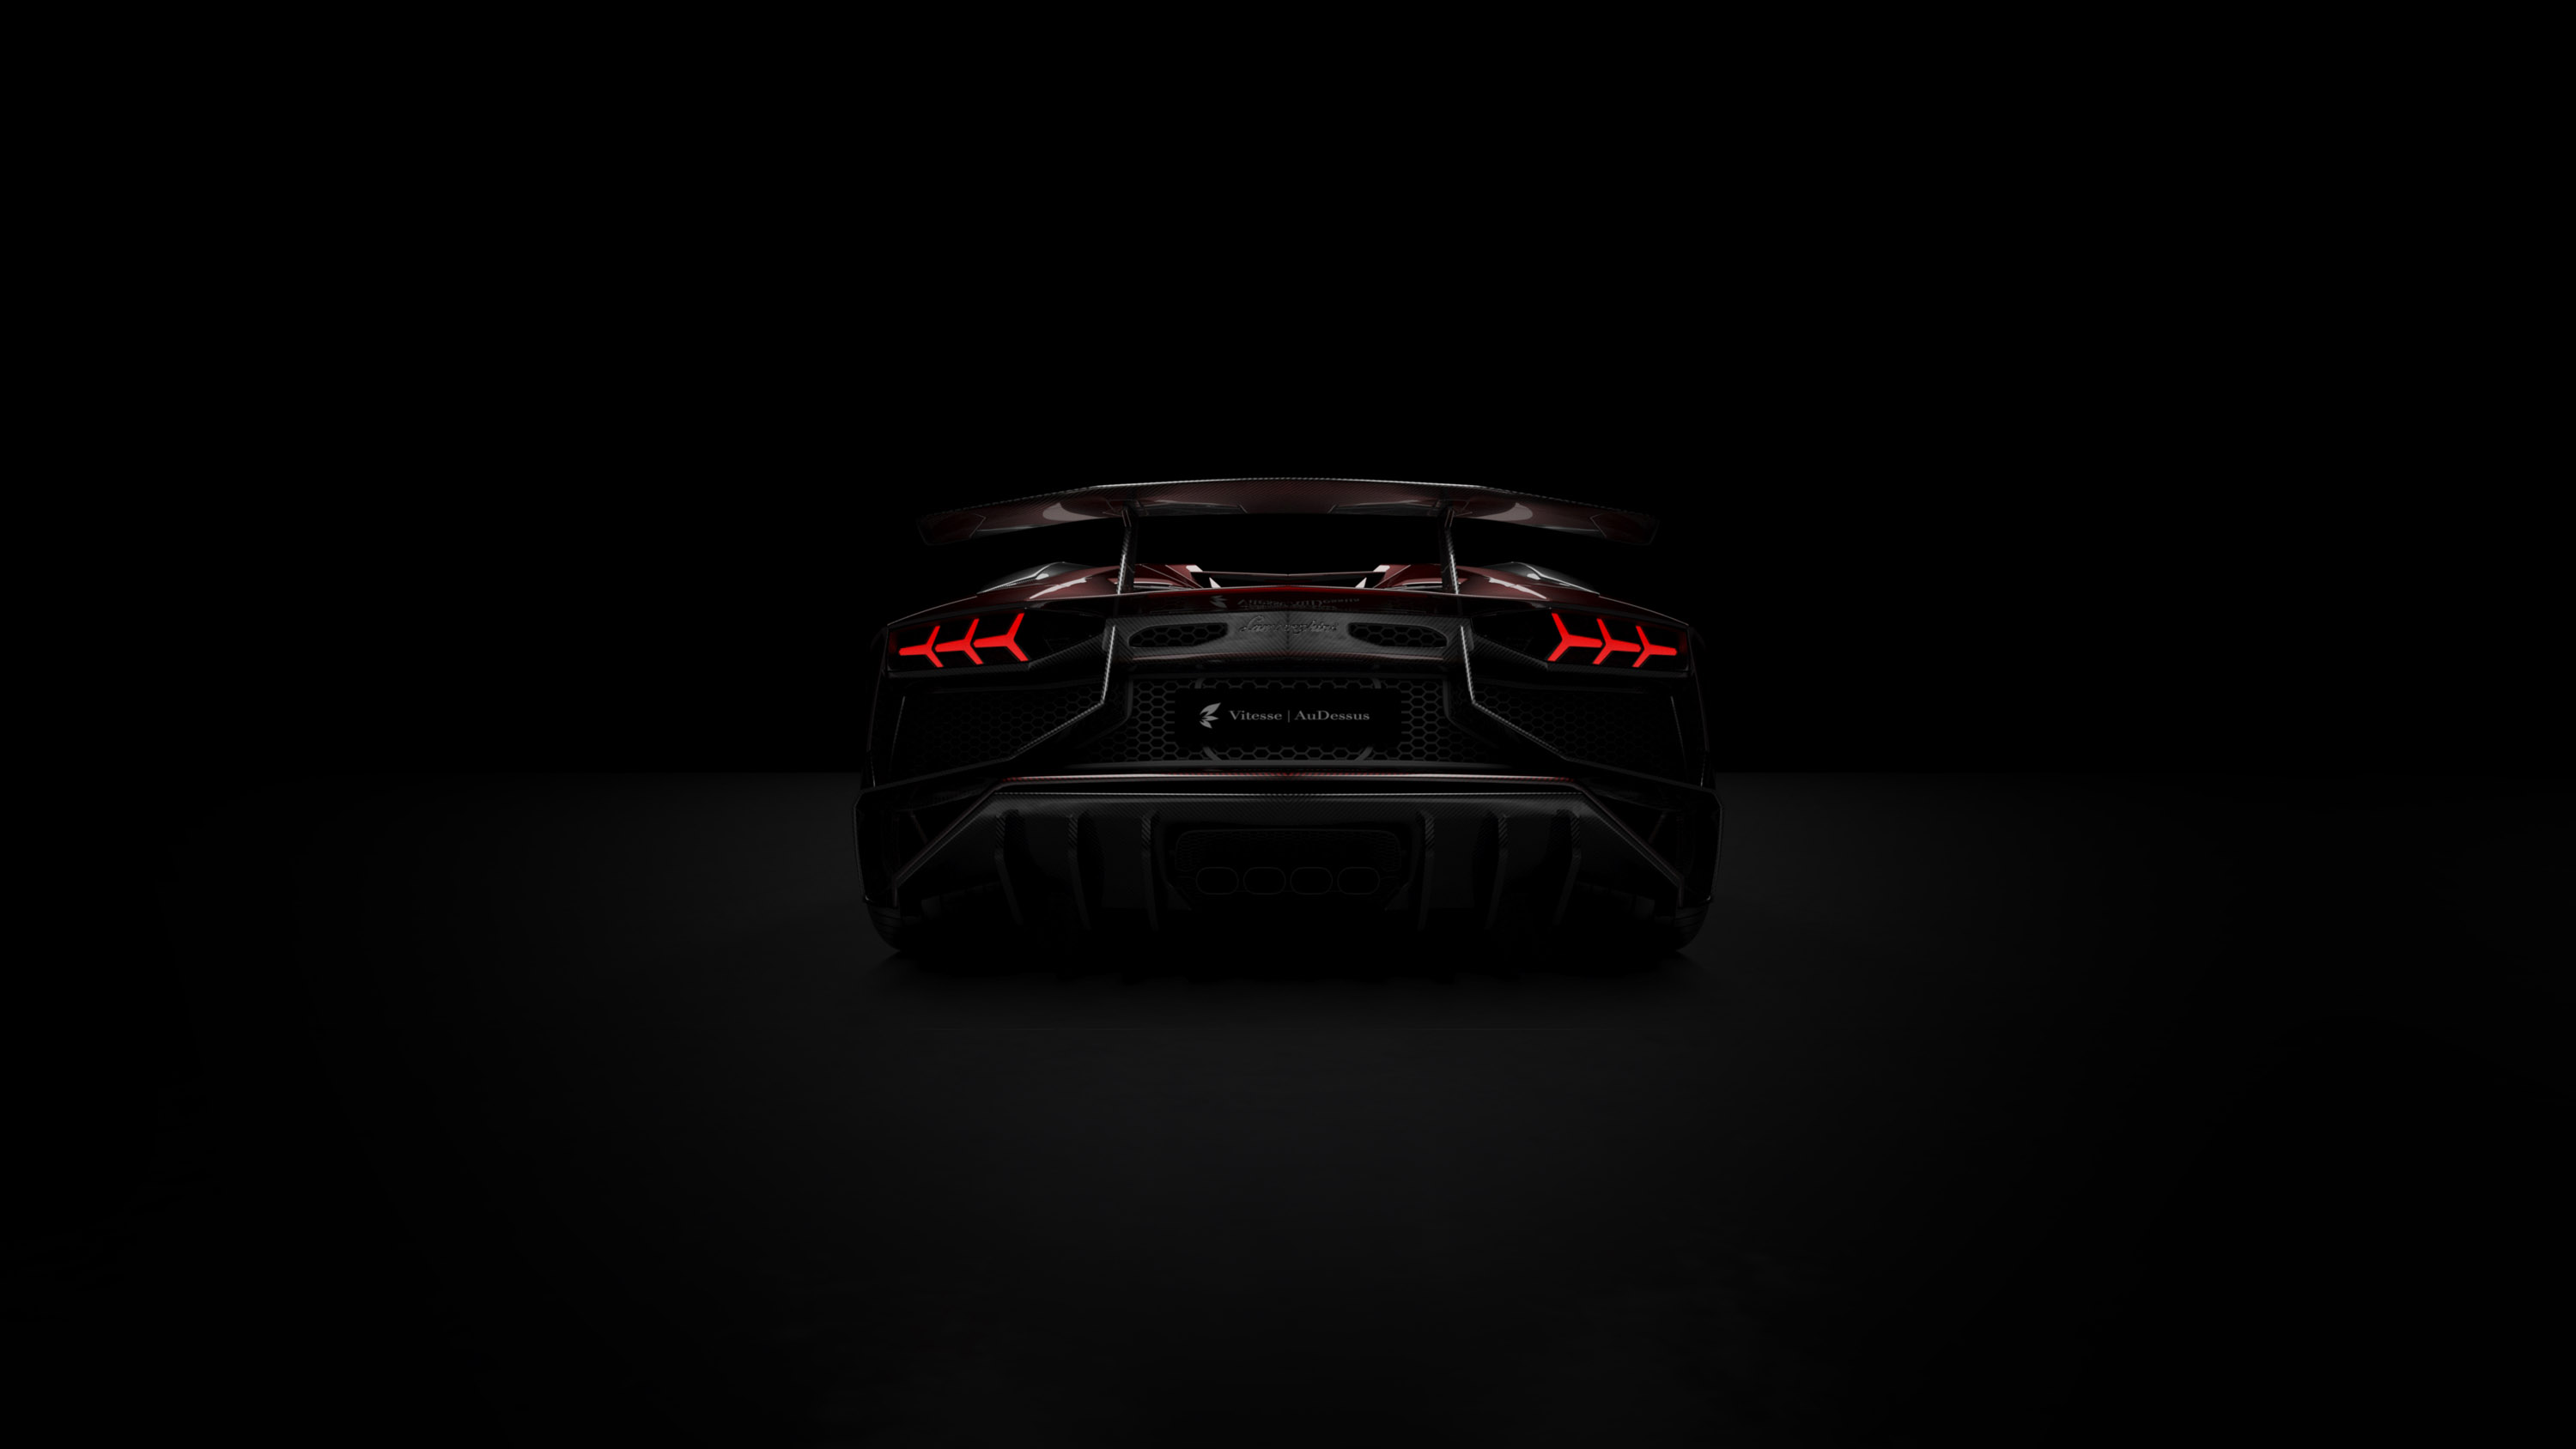 Vitesse AuDessus Lamborghini Aventador LP 750-4 Superveloce